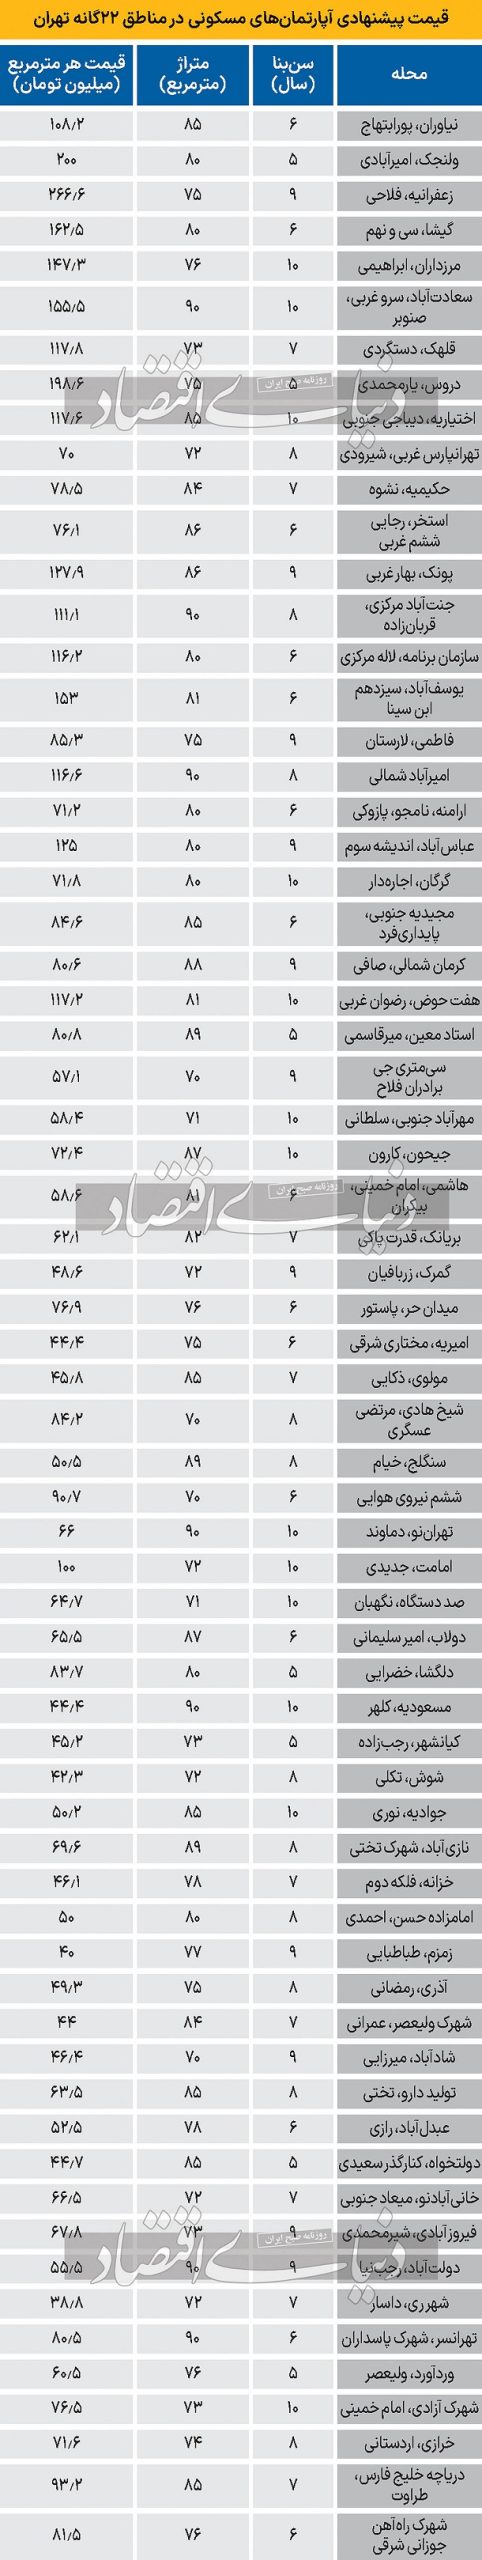 اولین لیست قیمت آپارتمان شهر تهران در سال 1403